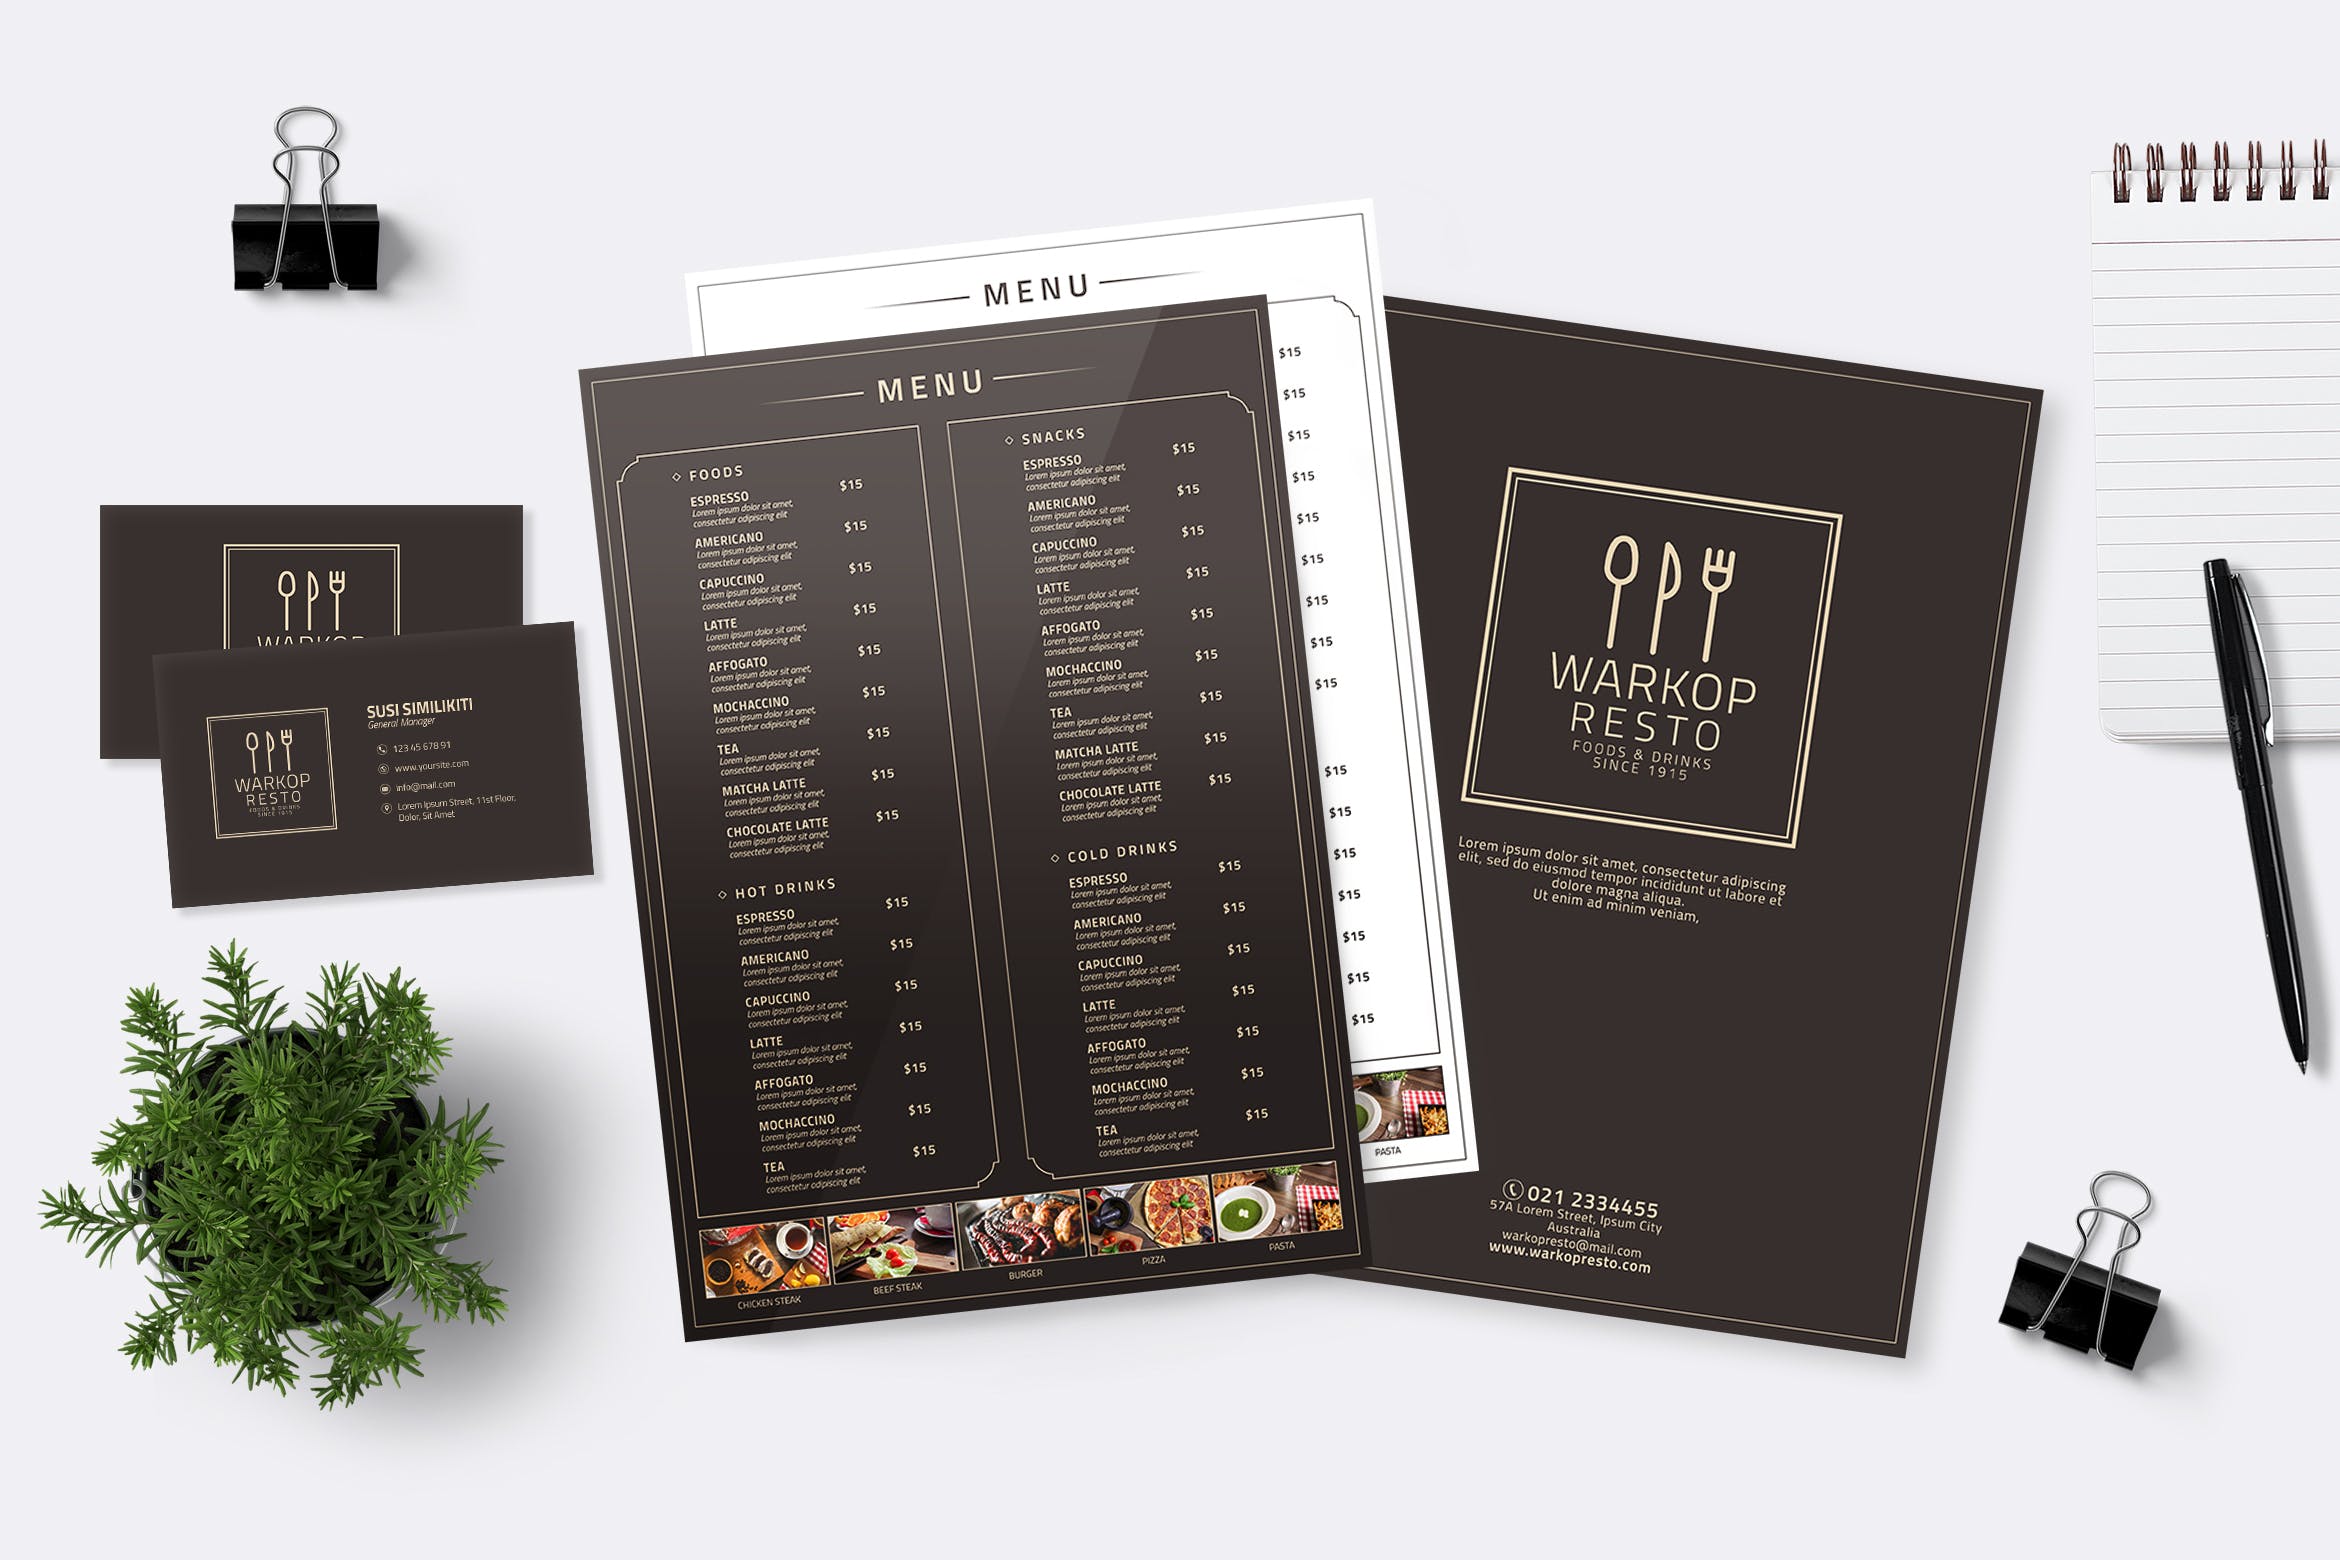 极简主义餐厅菜单&企业名片设计模板 Minimalist Food Menu & Business Card插图